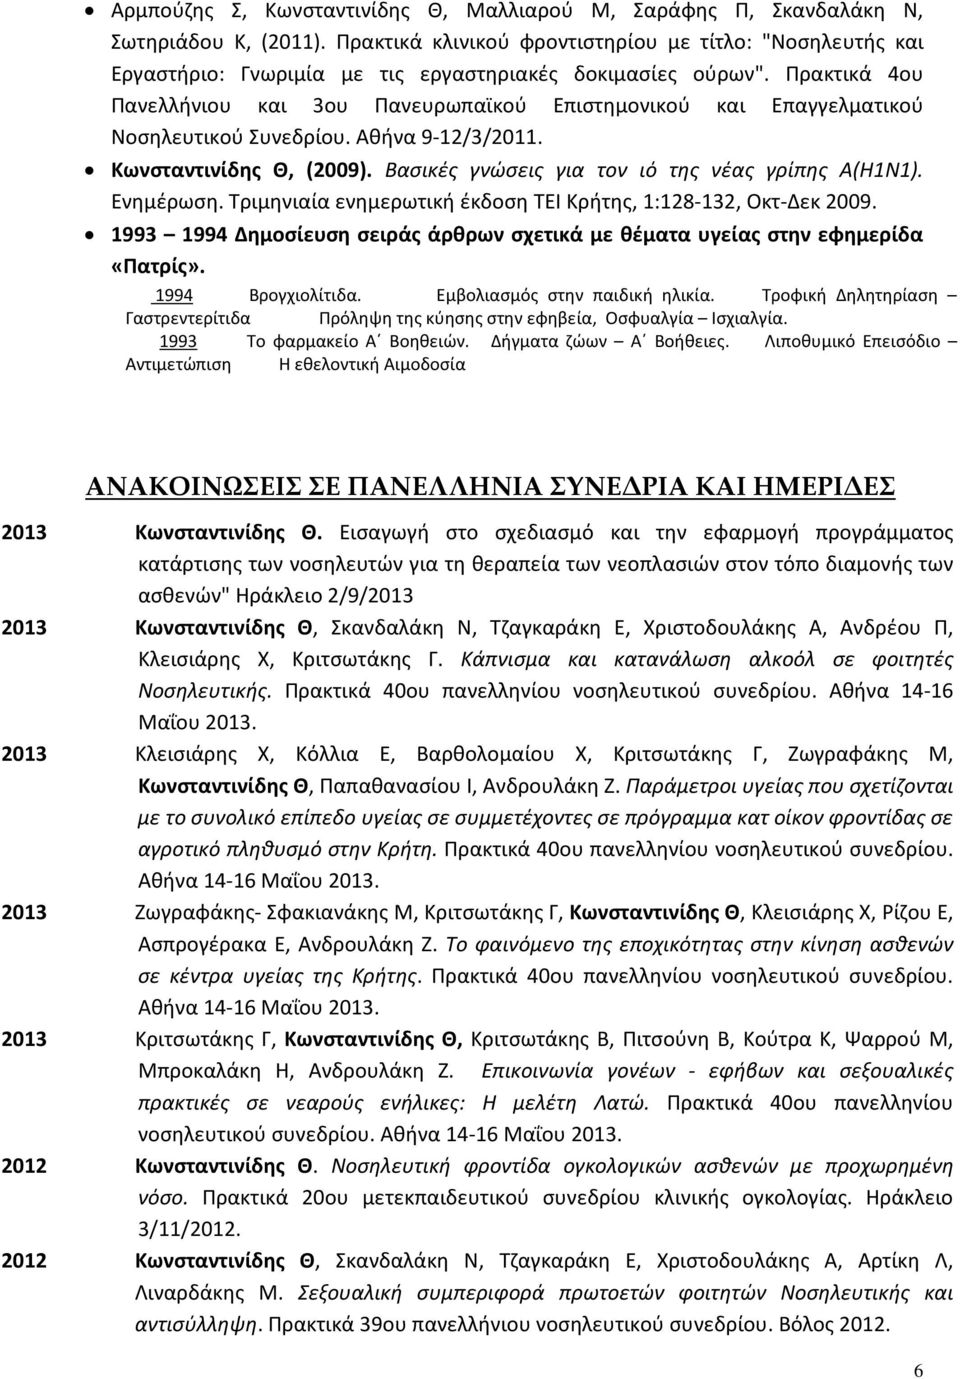 Πρακτικά 4ου Πανελλήνιου και 3ου Πανευρωπαϊκού Επιστημονικού και Επαγγελματικού Νοσηλευτικού Συνεδρίου. Αθήνα 9-12/3/2011. Κωνσταντινίδης Θ, (2009). Βασικές γνώσεις για τον ιό της νέας γρίπης Α(Η1Ν1).